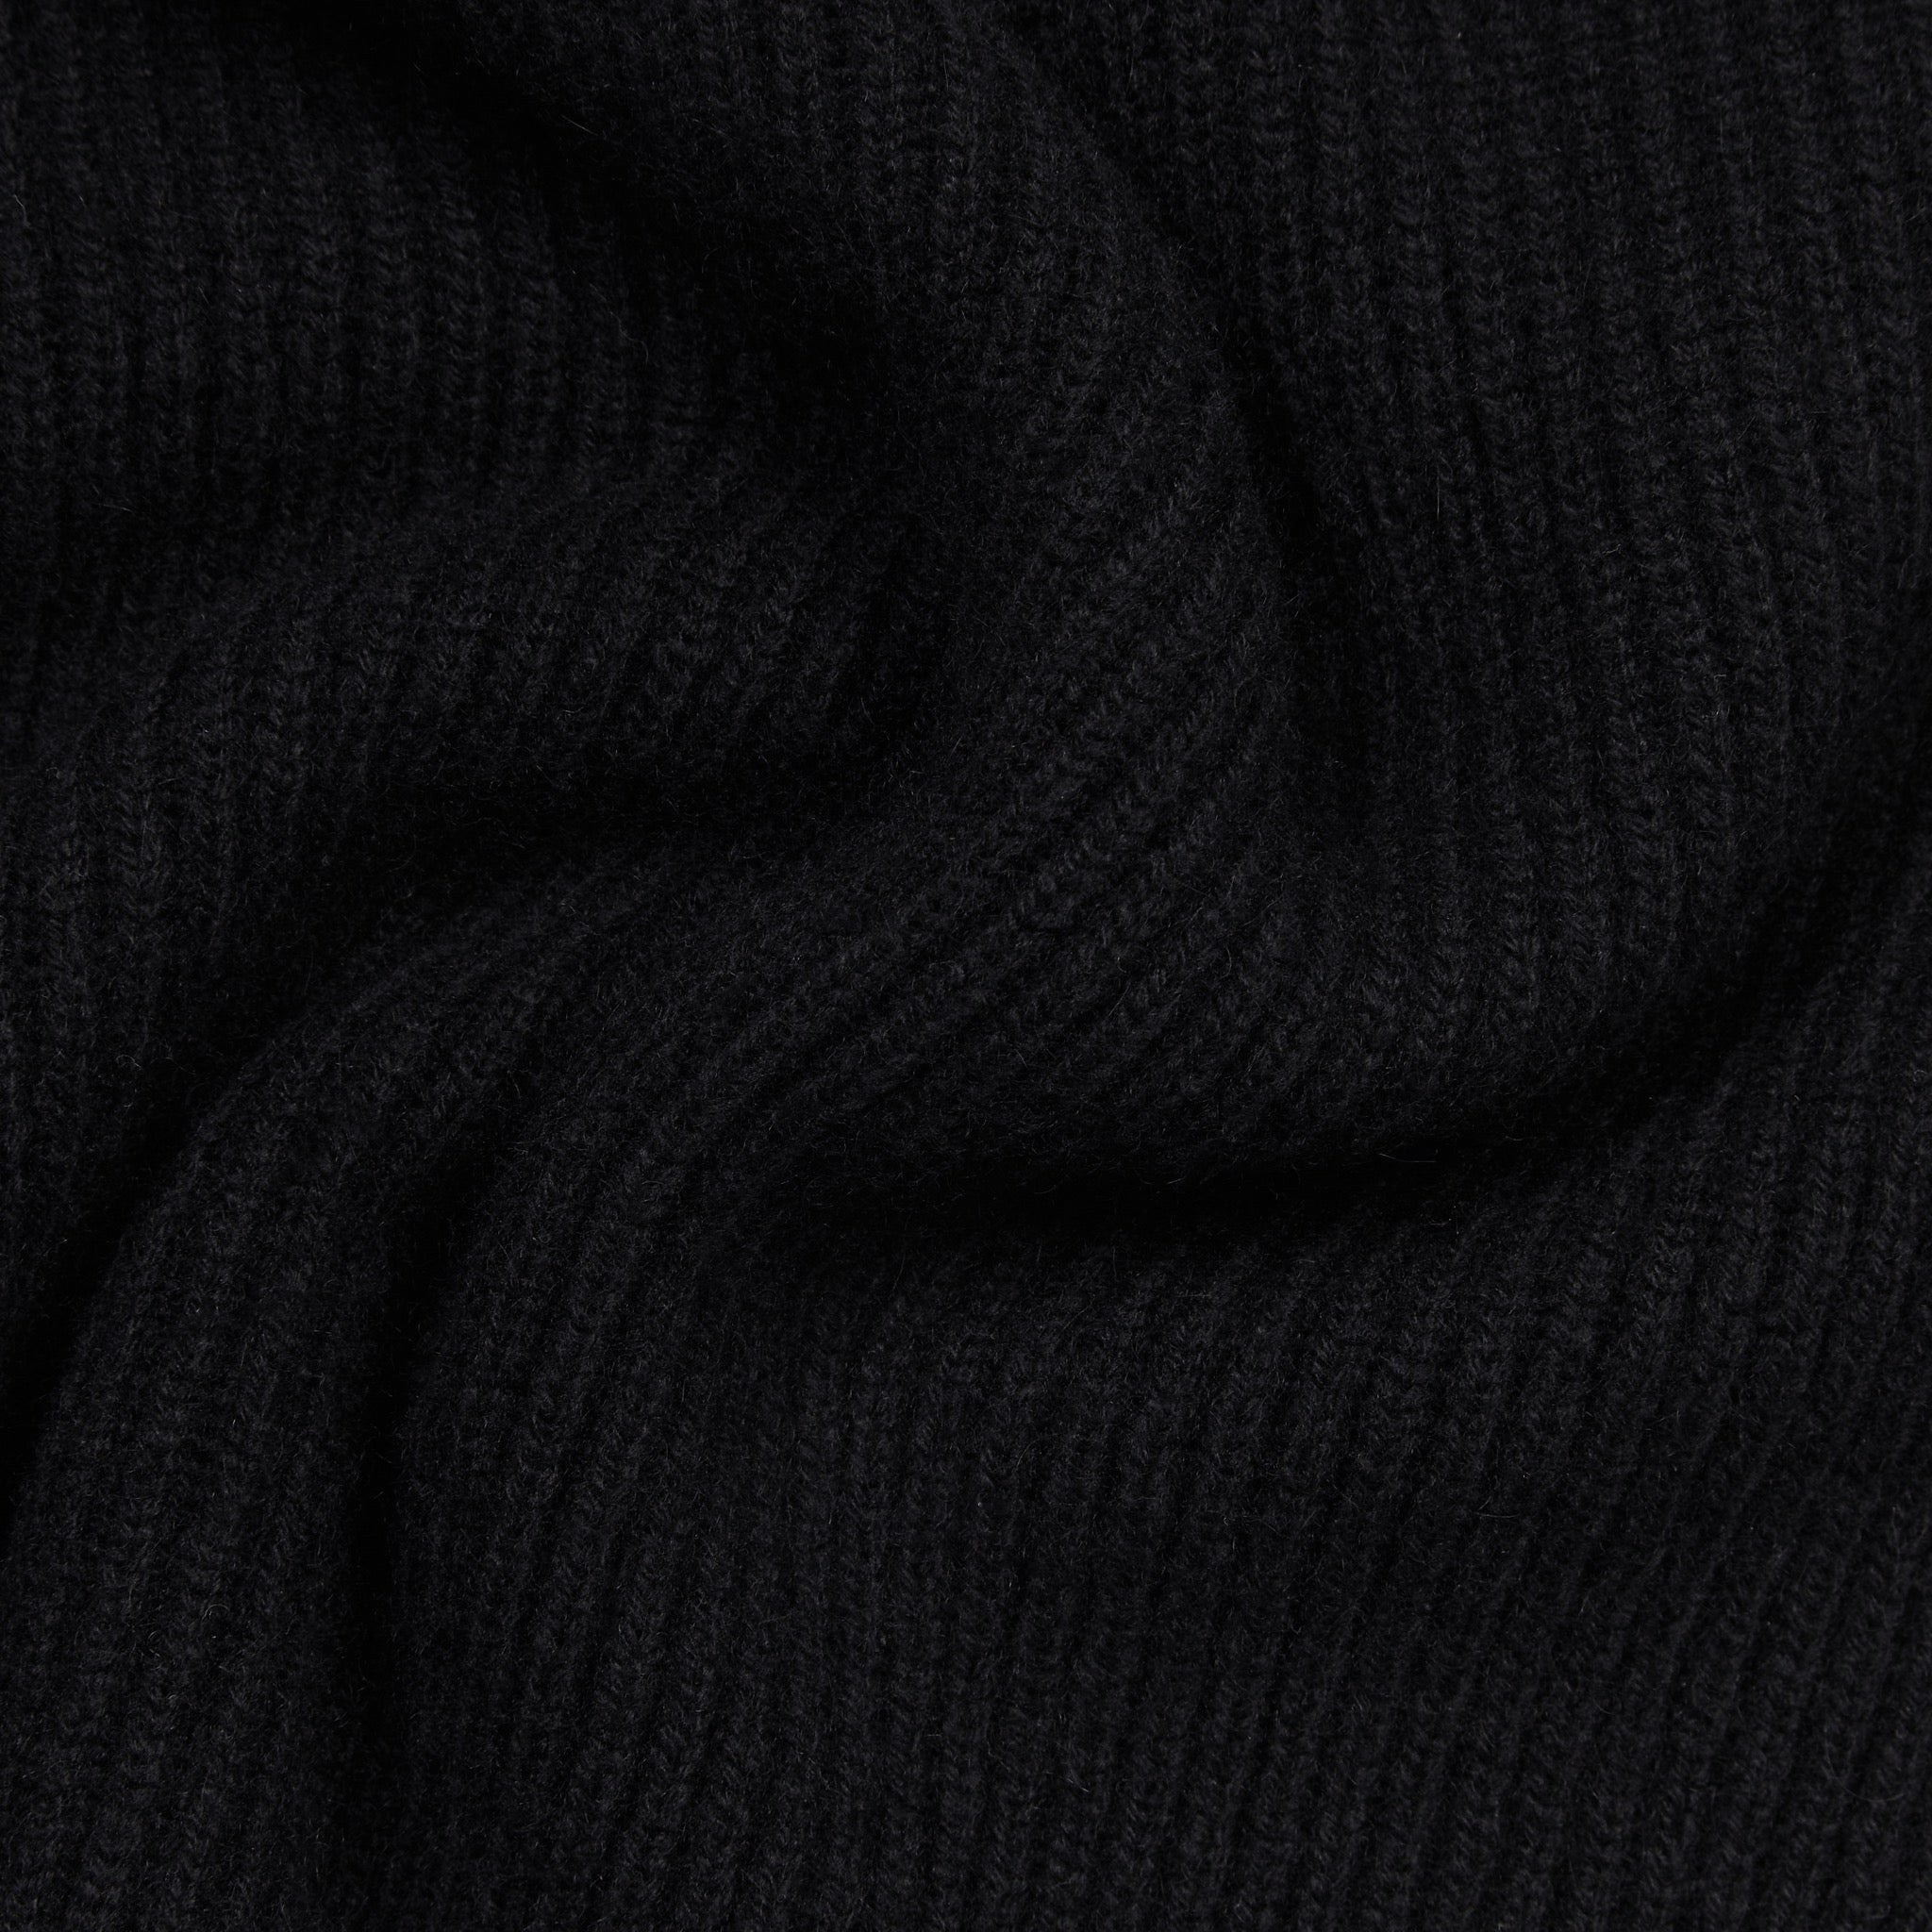 Cashmere alpine half zip sweater in black